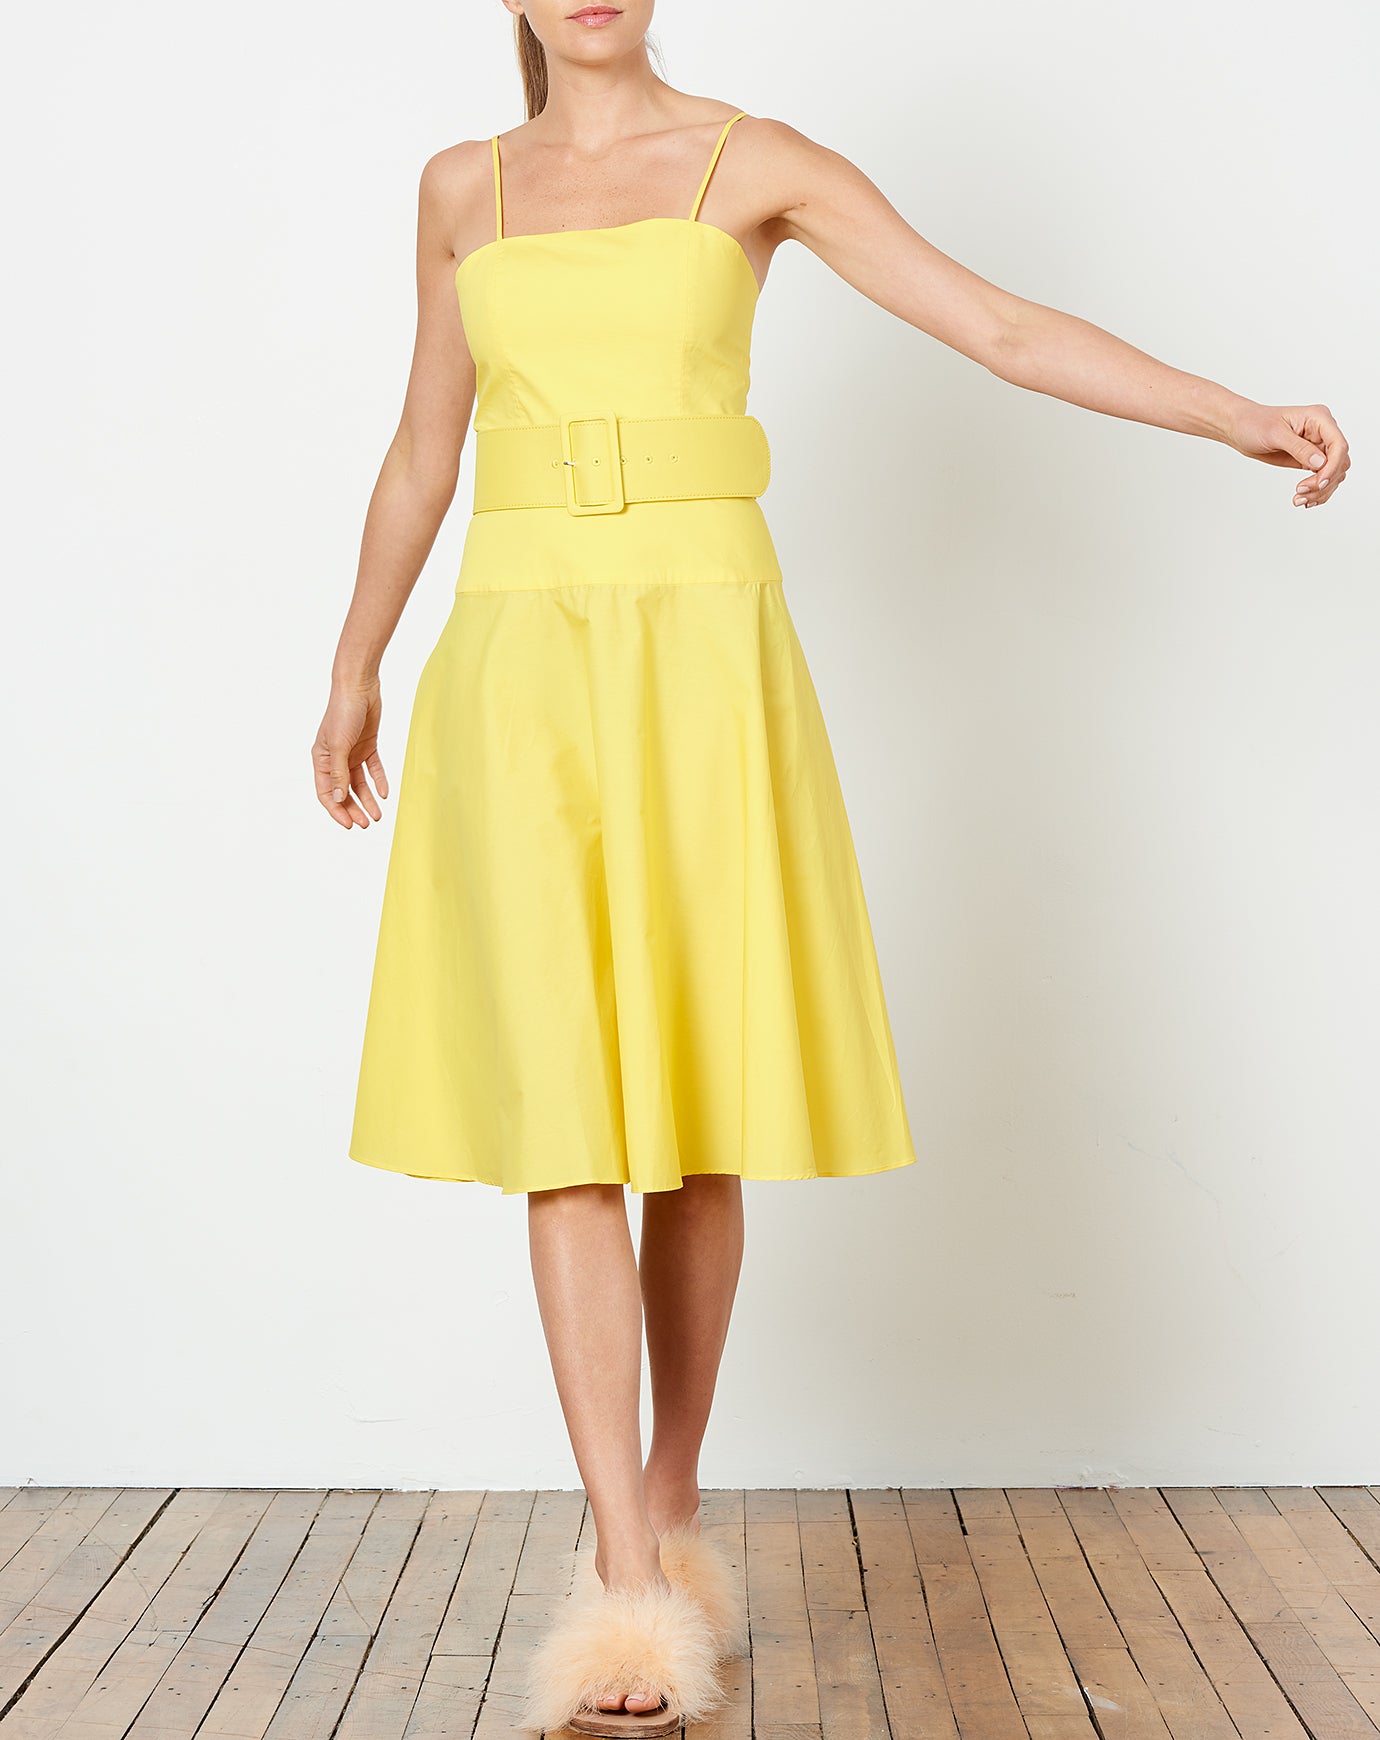 Rachel Antonoff Carter Belted Dress in Yellow